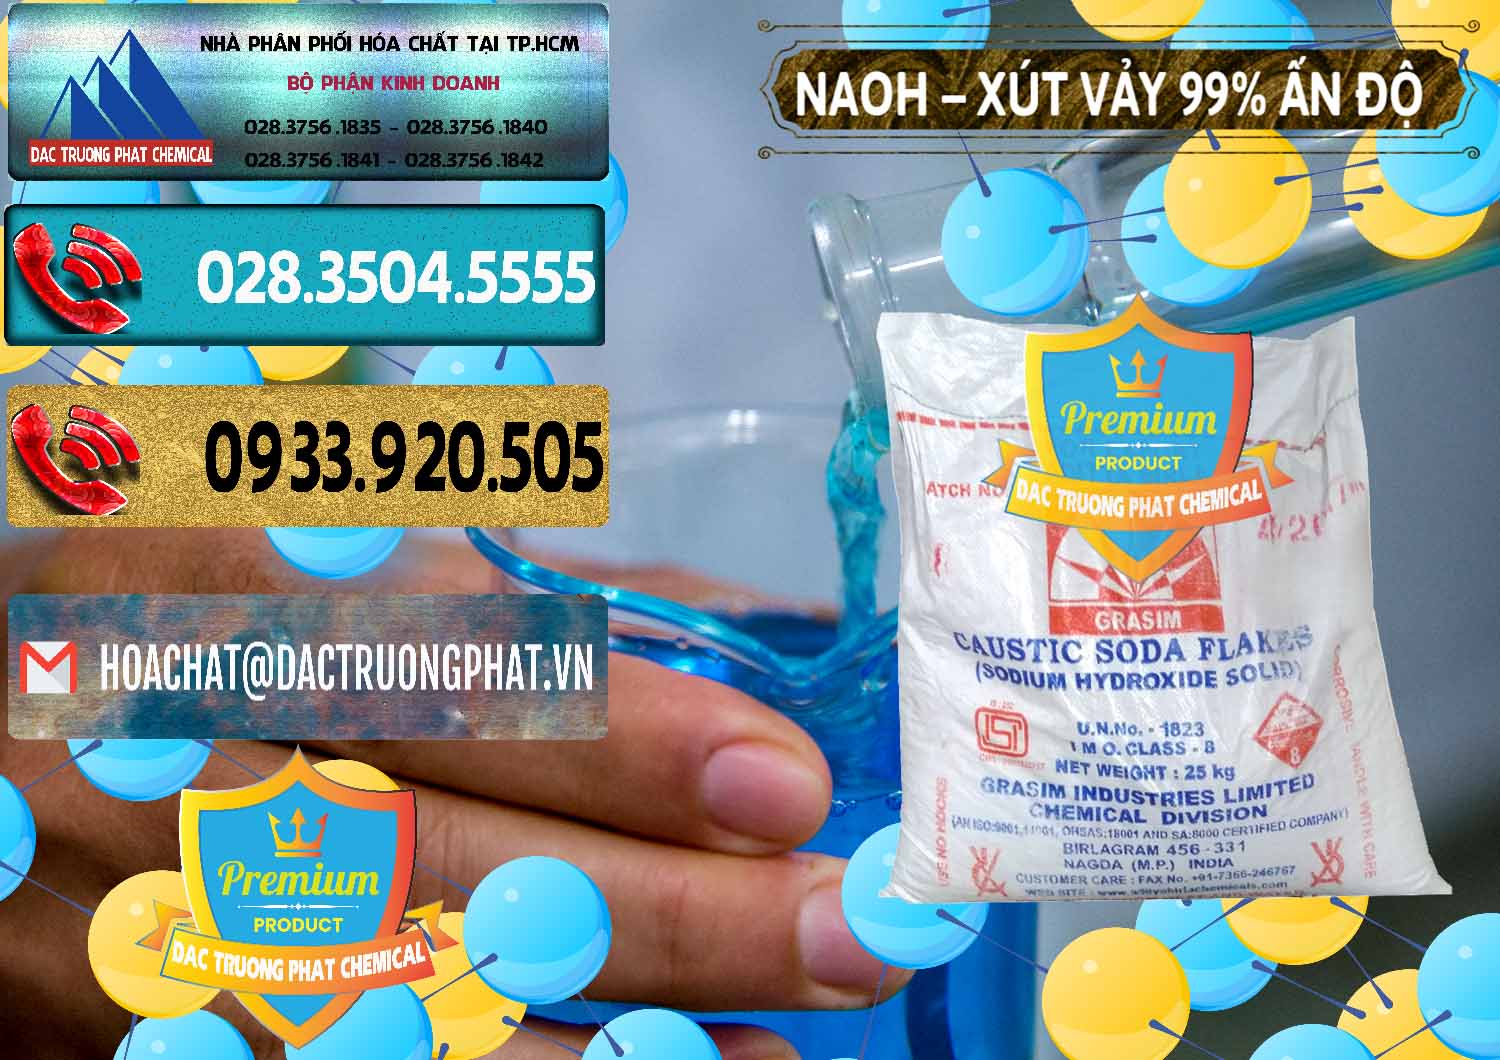 Đơn vị bán và cung ứng Xút Vảy - NaOH Vảy 99% Aditya Birla Grasim Ấn Độ India - 0171 - Nơi cung cấp & bán hóa chất tại TP.HCM - hoachatdetnhuom.com